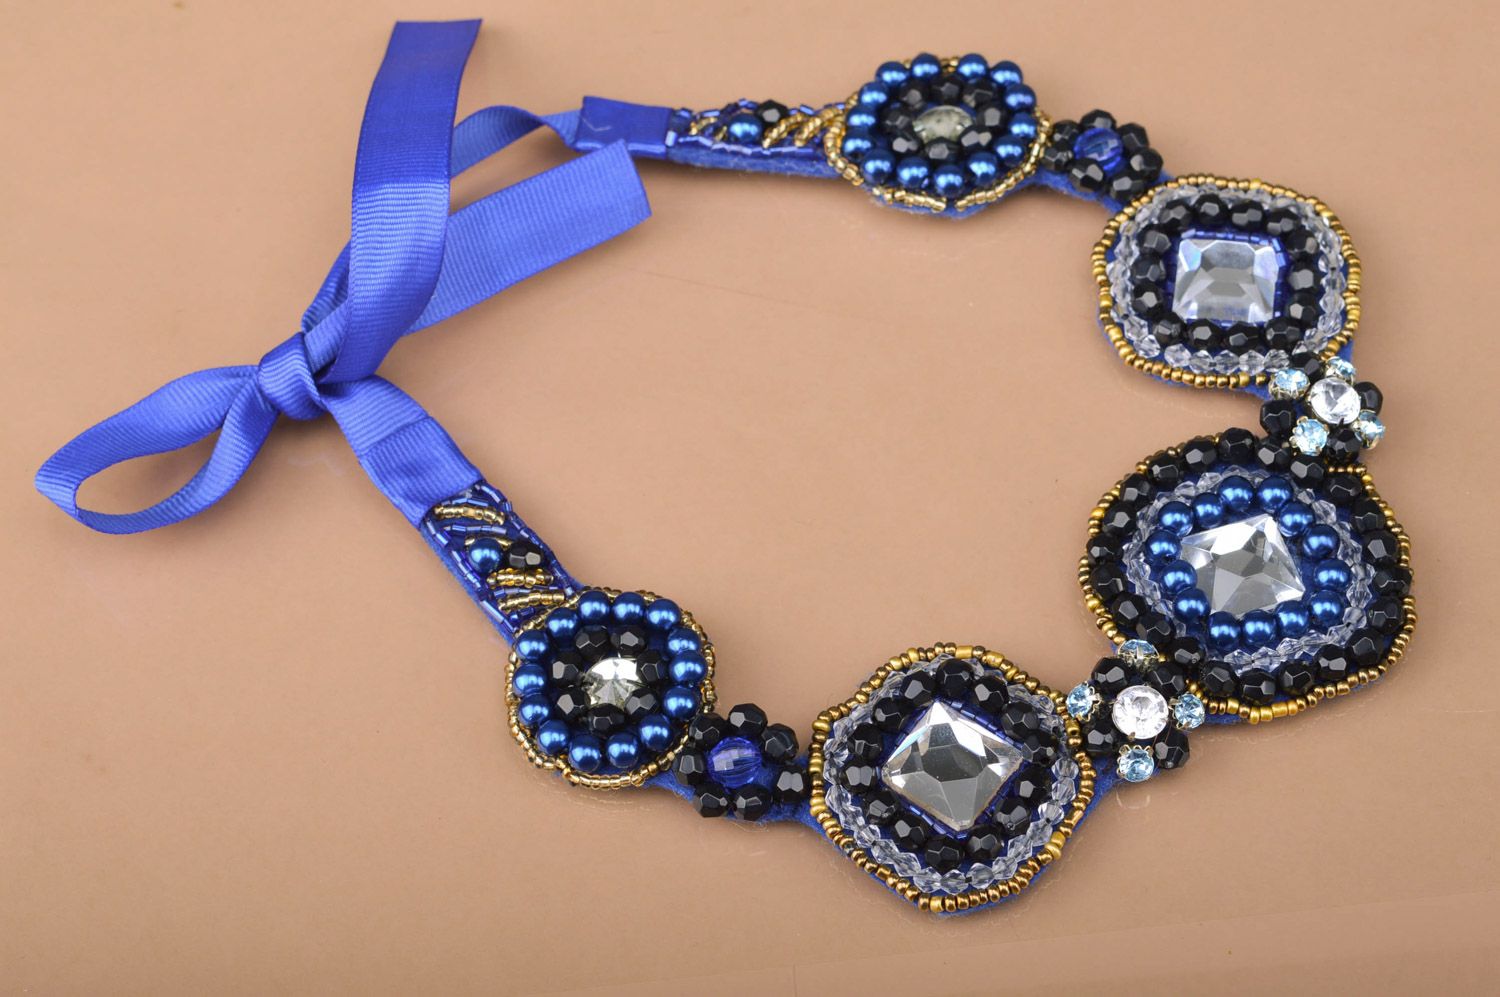 Grand collier bleu feutre perles fantaisie fait main Mille et Une Nuits photo 2